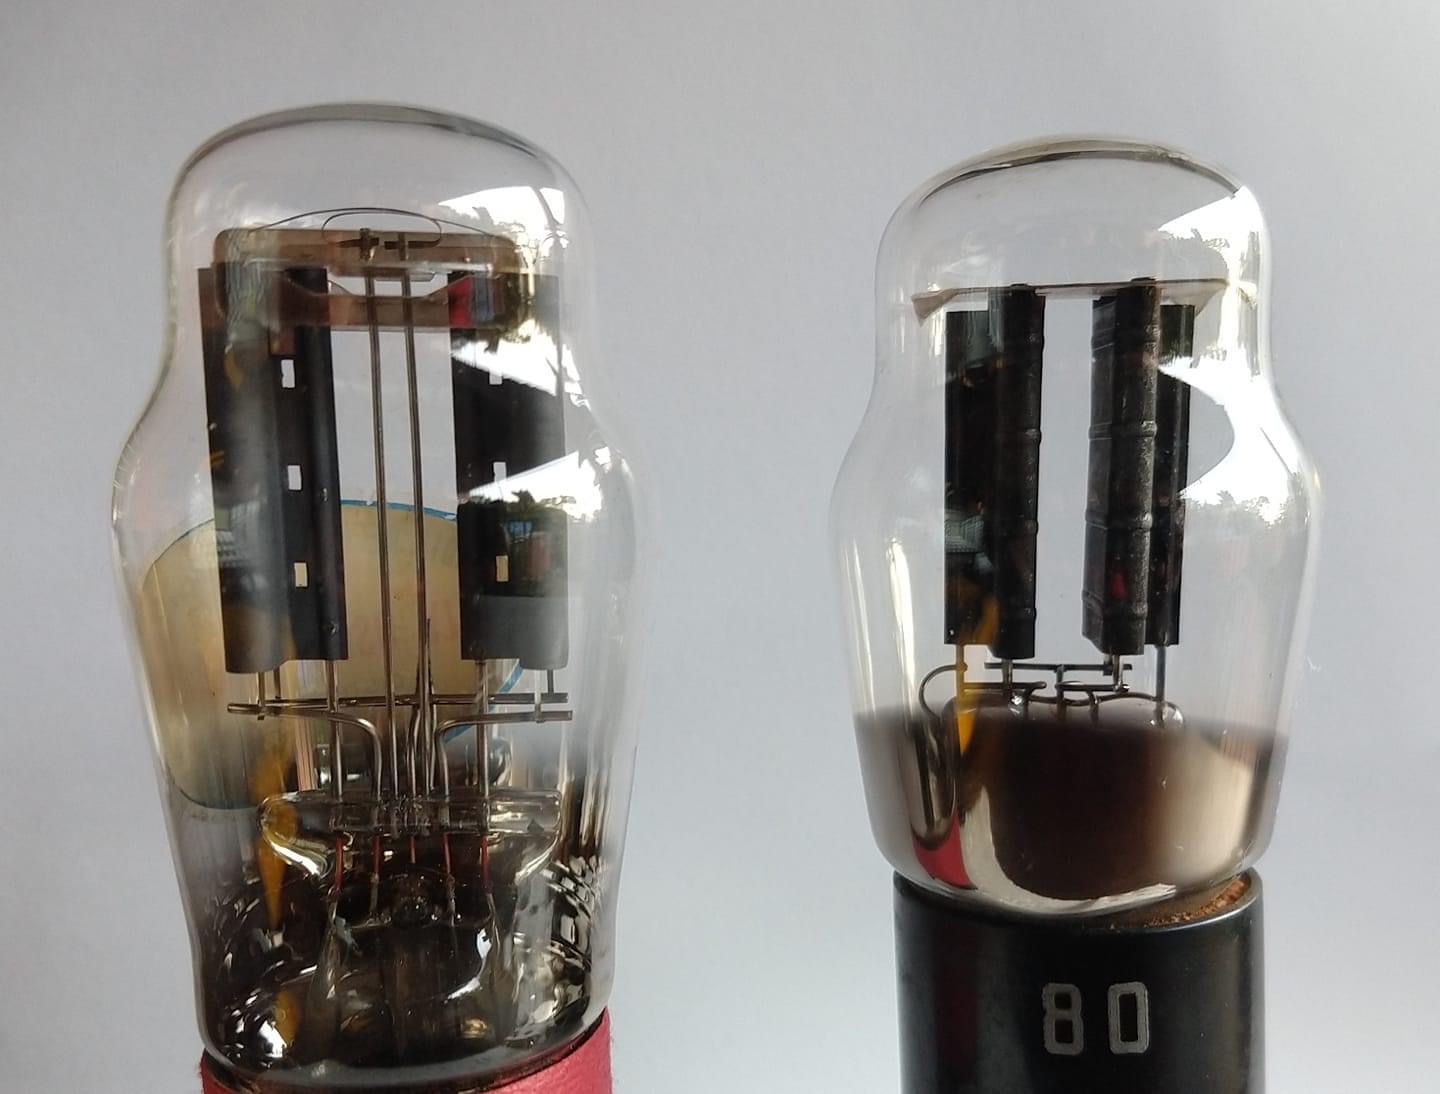 À esquerda, a válvula retificadora AZ1; à direita, a tipo 80